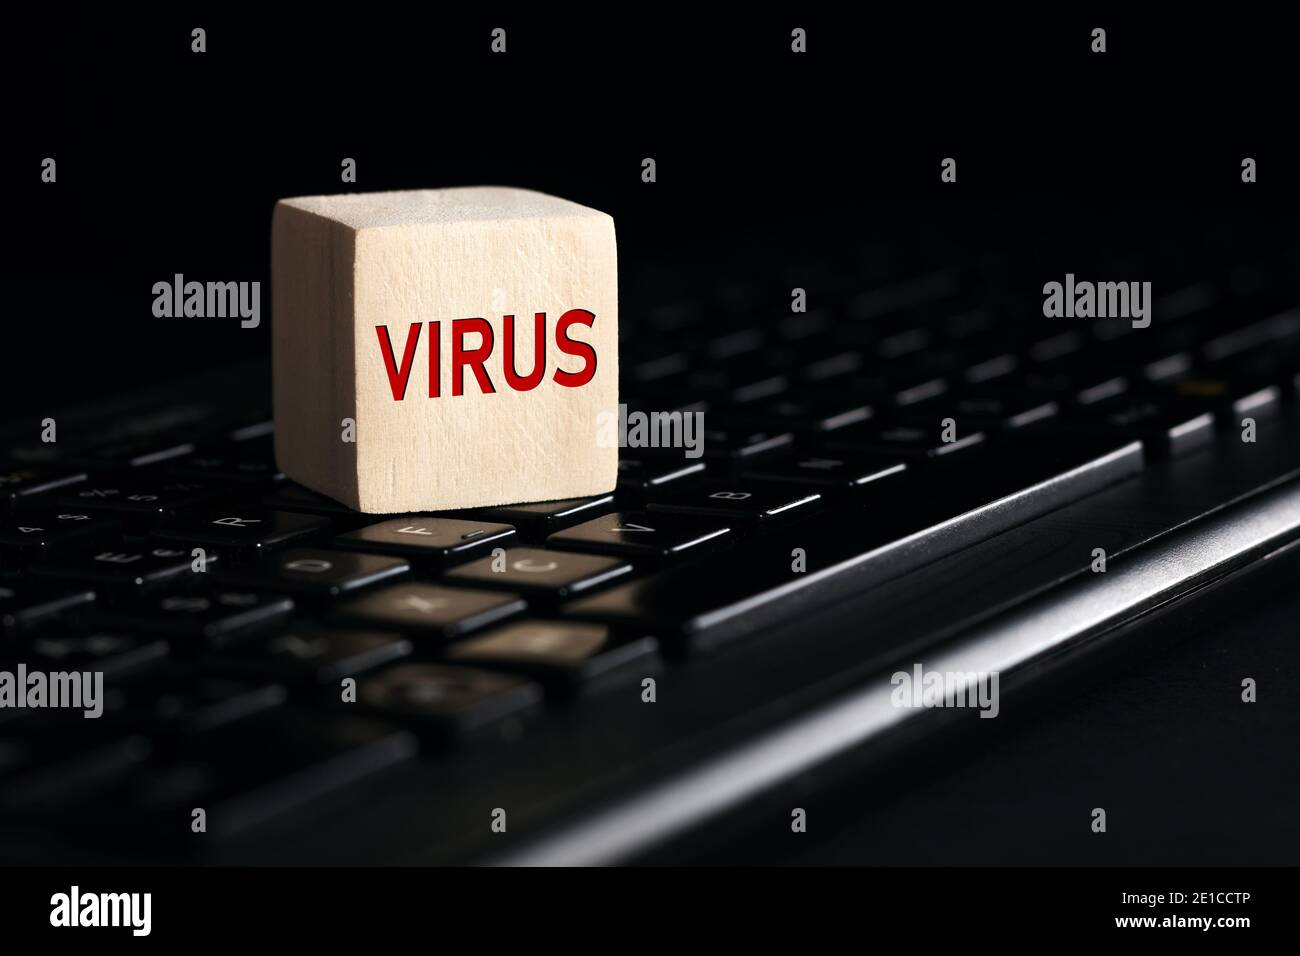 Le mot virus sur bloc de bois avec clavier d'ordinateur sur fond noir. Concept de menace de virus informatique. Banque D'Images